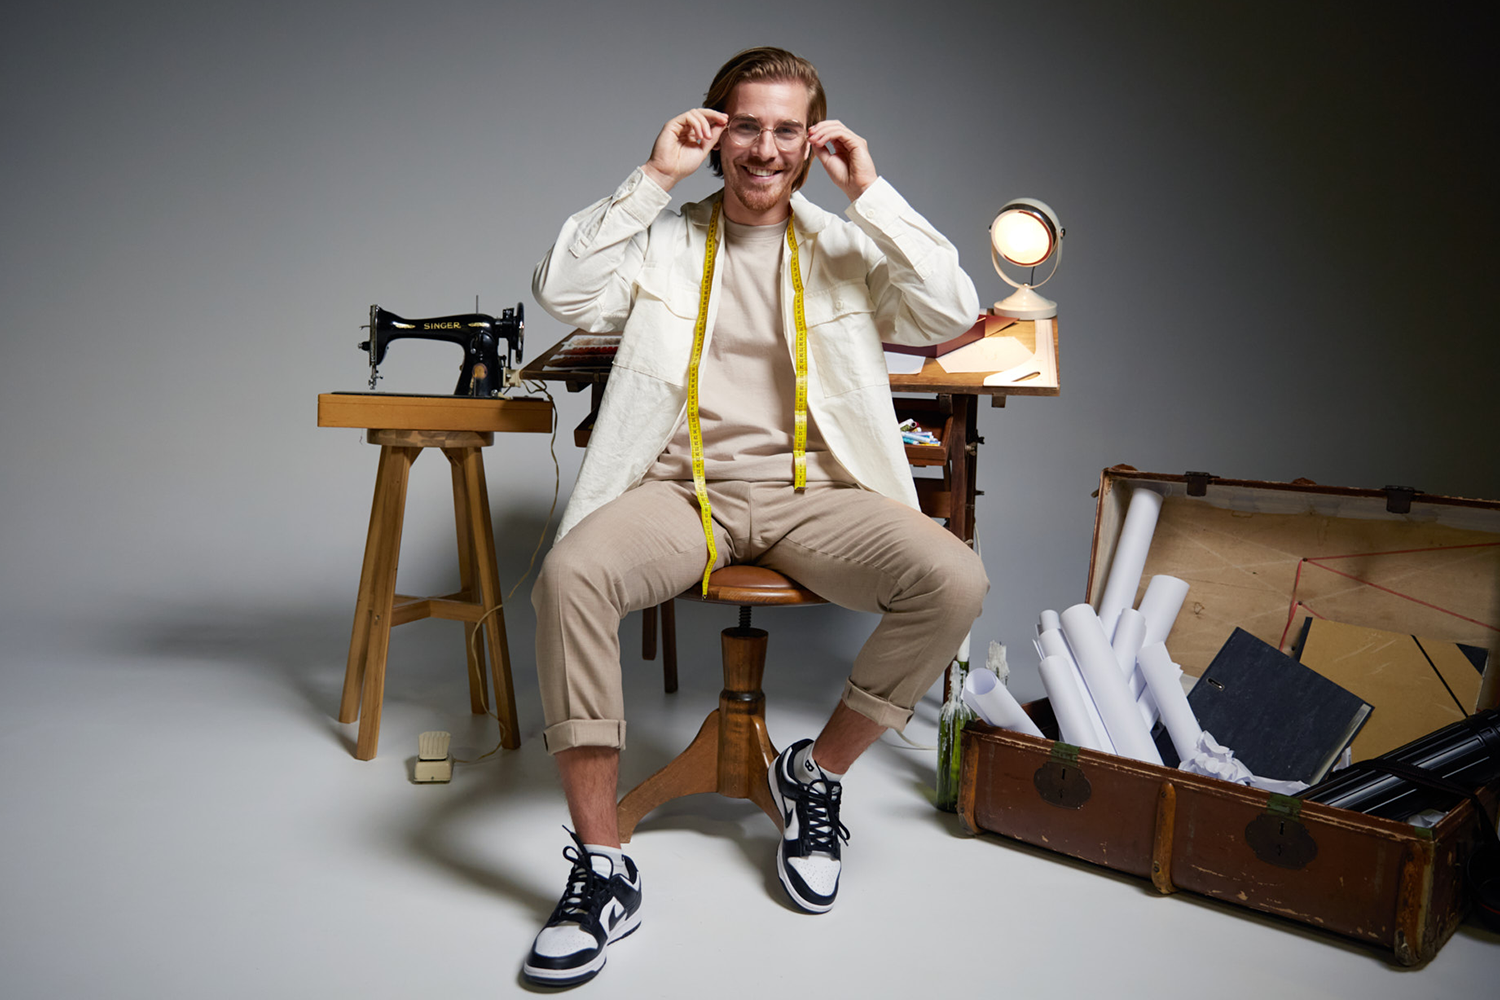 Servaas Steenbergen als ontwerper van de sokken met onderbroekenband, gefotografeerd in zijn studio.